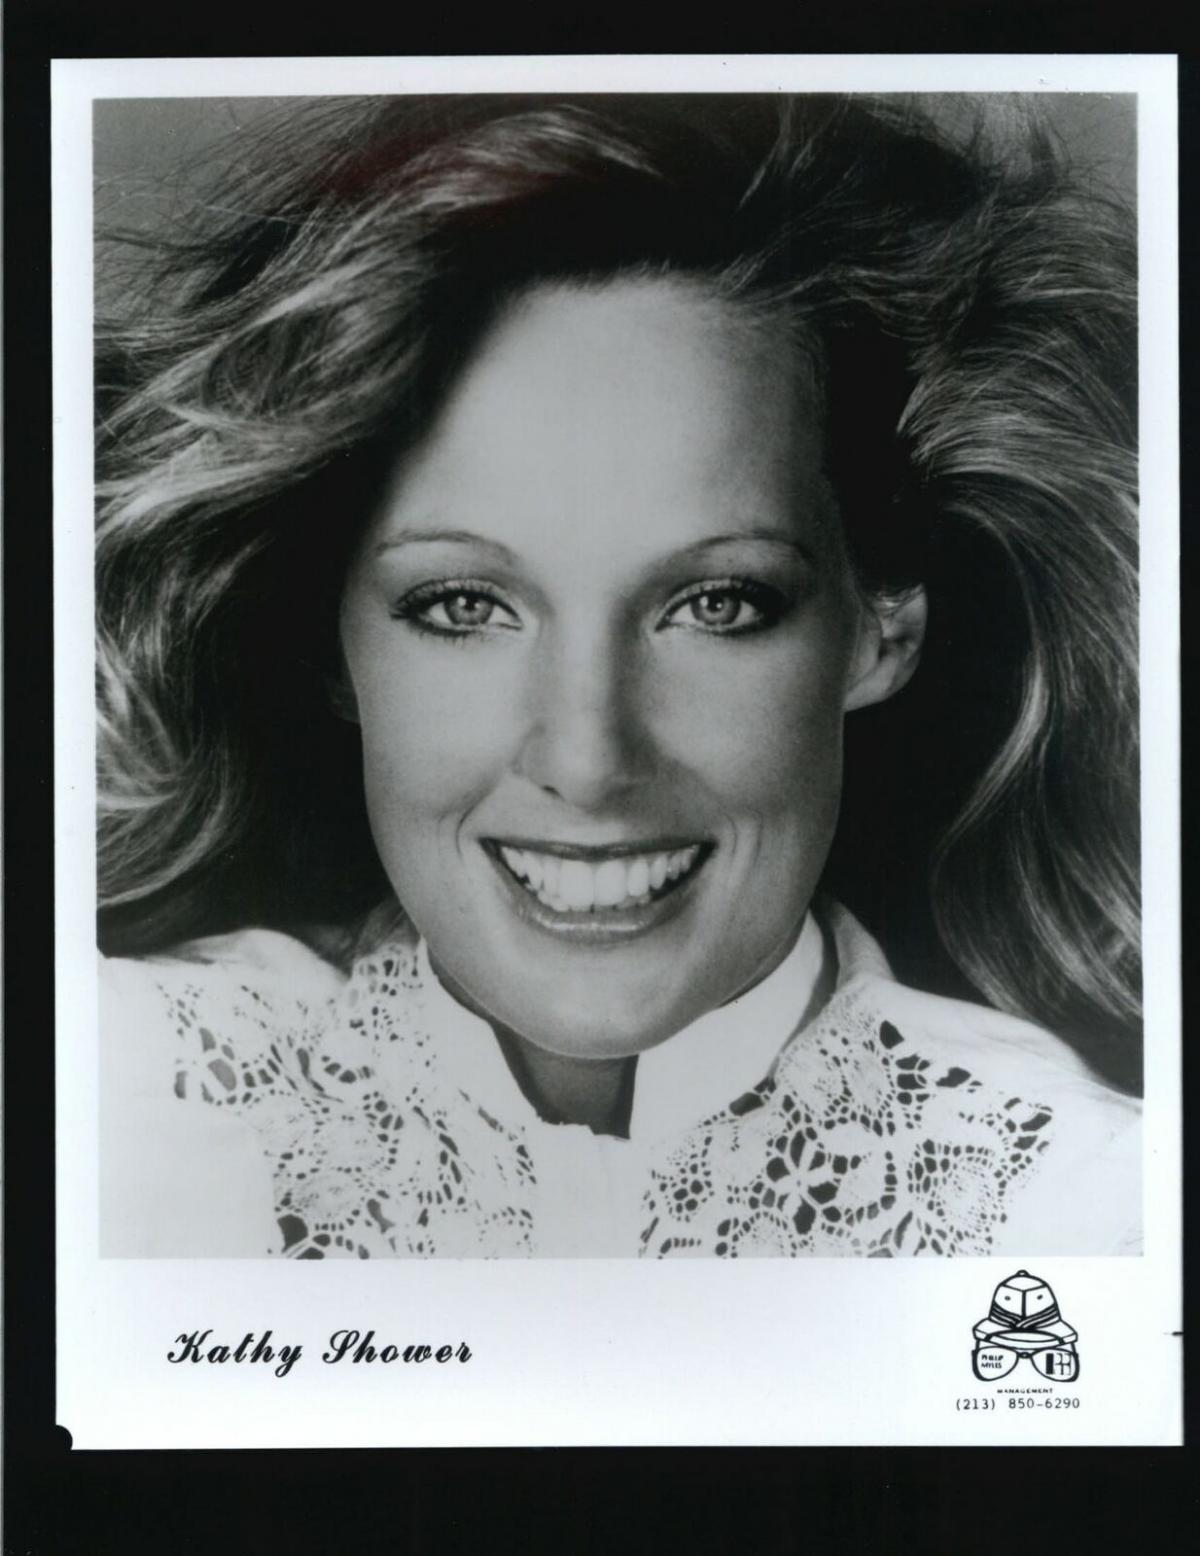 Kathy-Shower-8x10-Headshot-Photo-Playboy.jpg